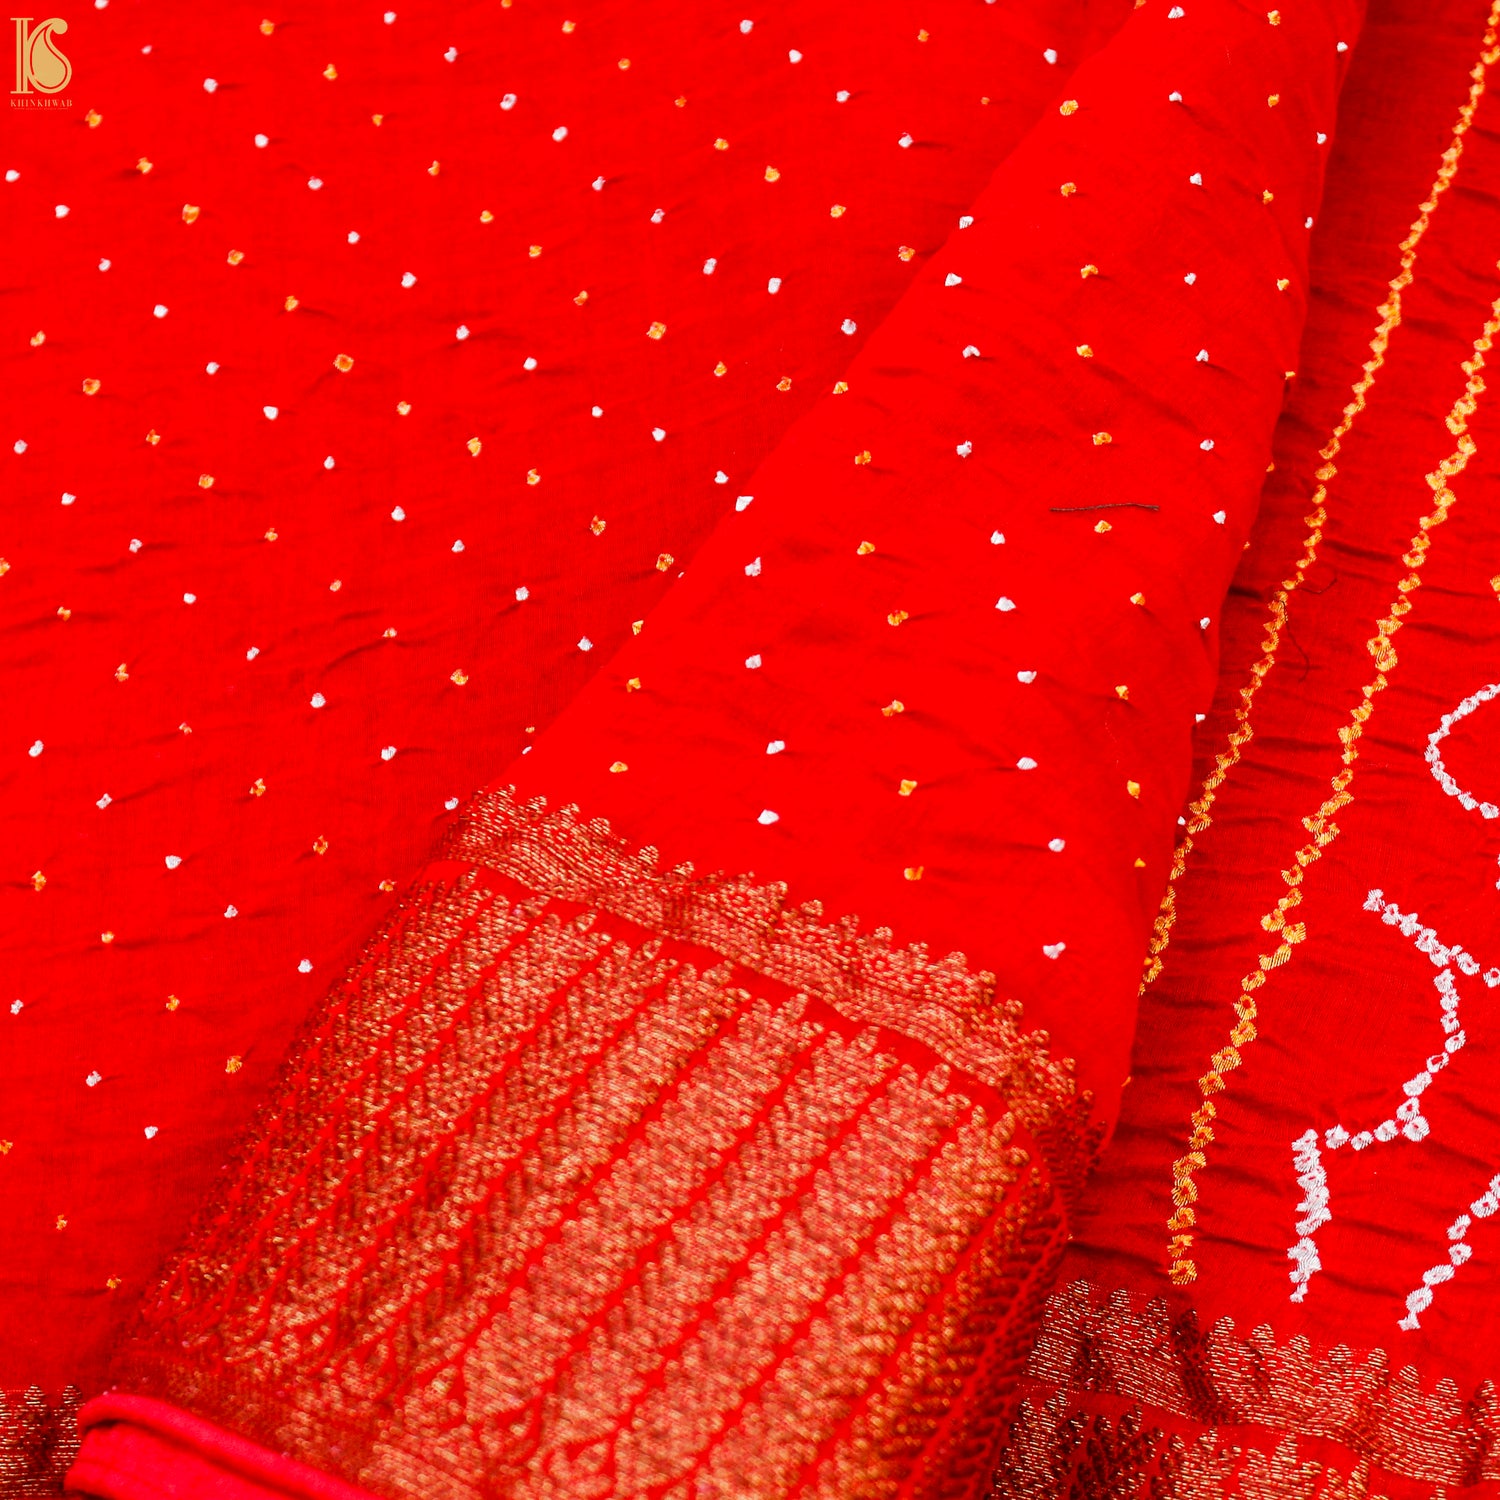 Red Pure Cotton Bandhani Banarasi Saree - Khinkhwab